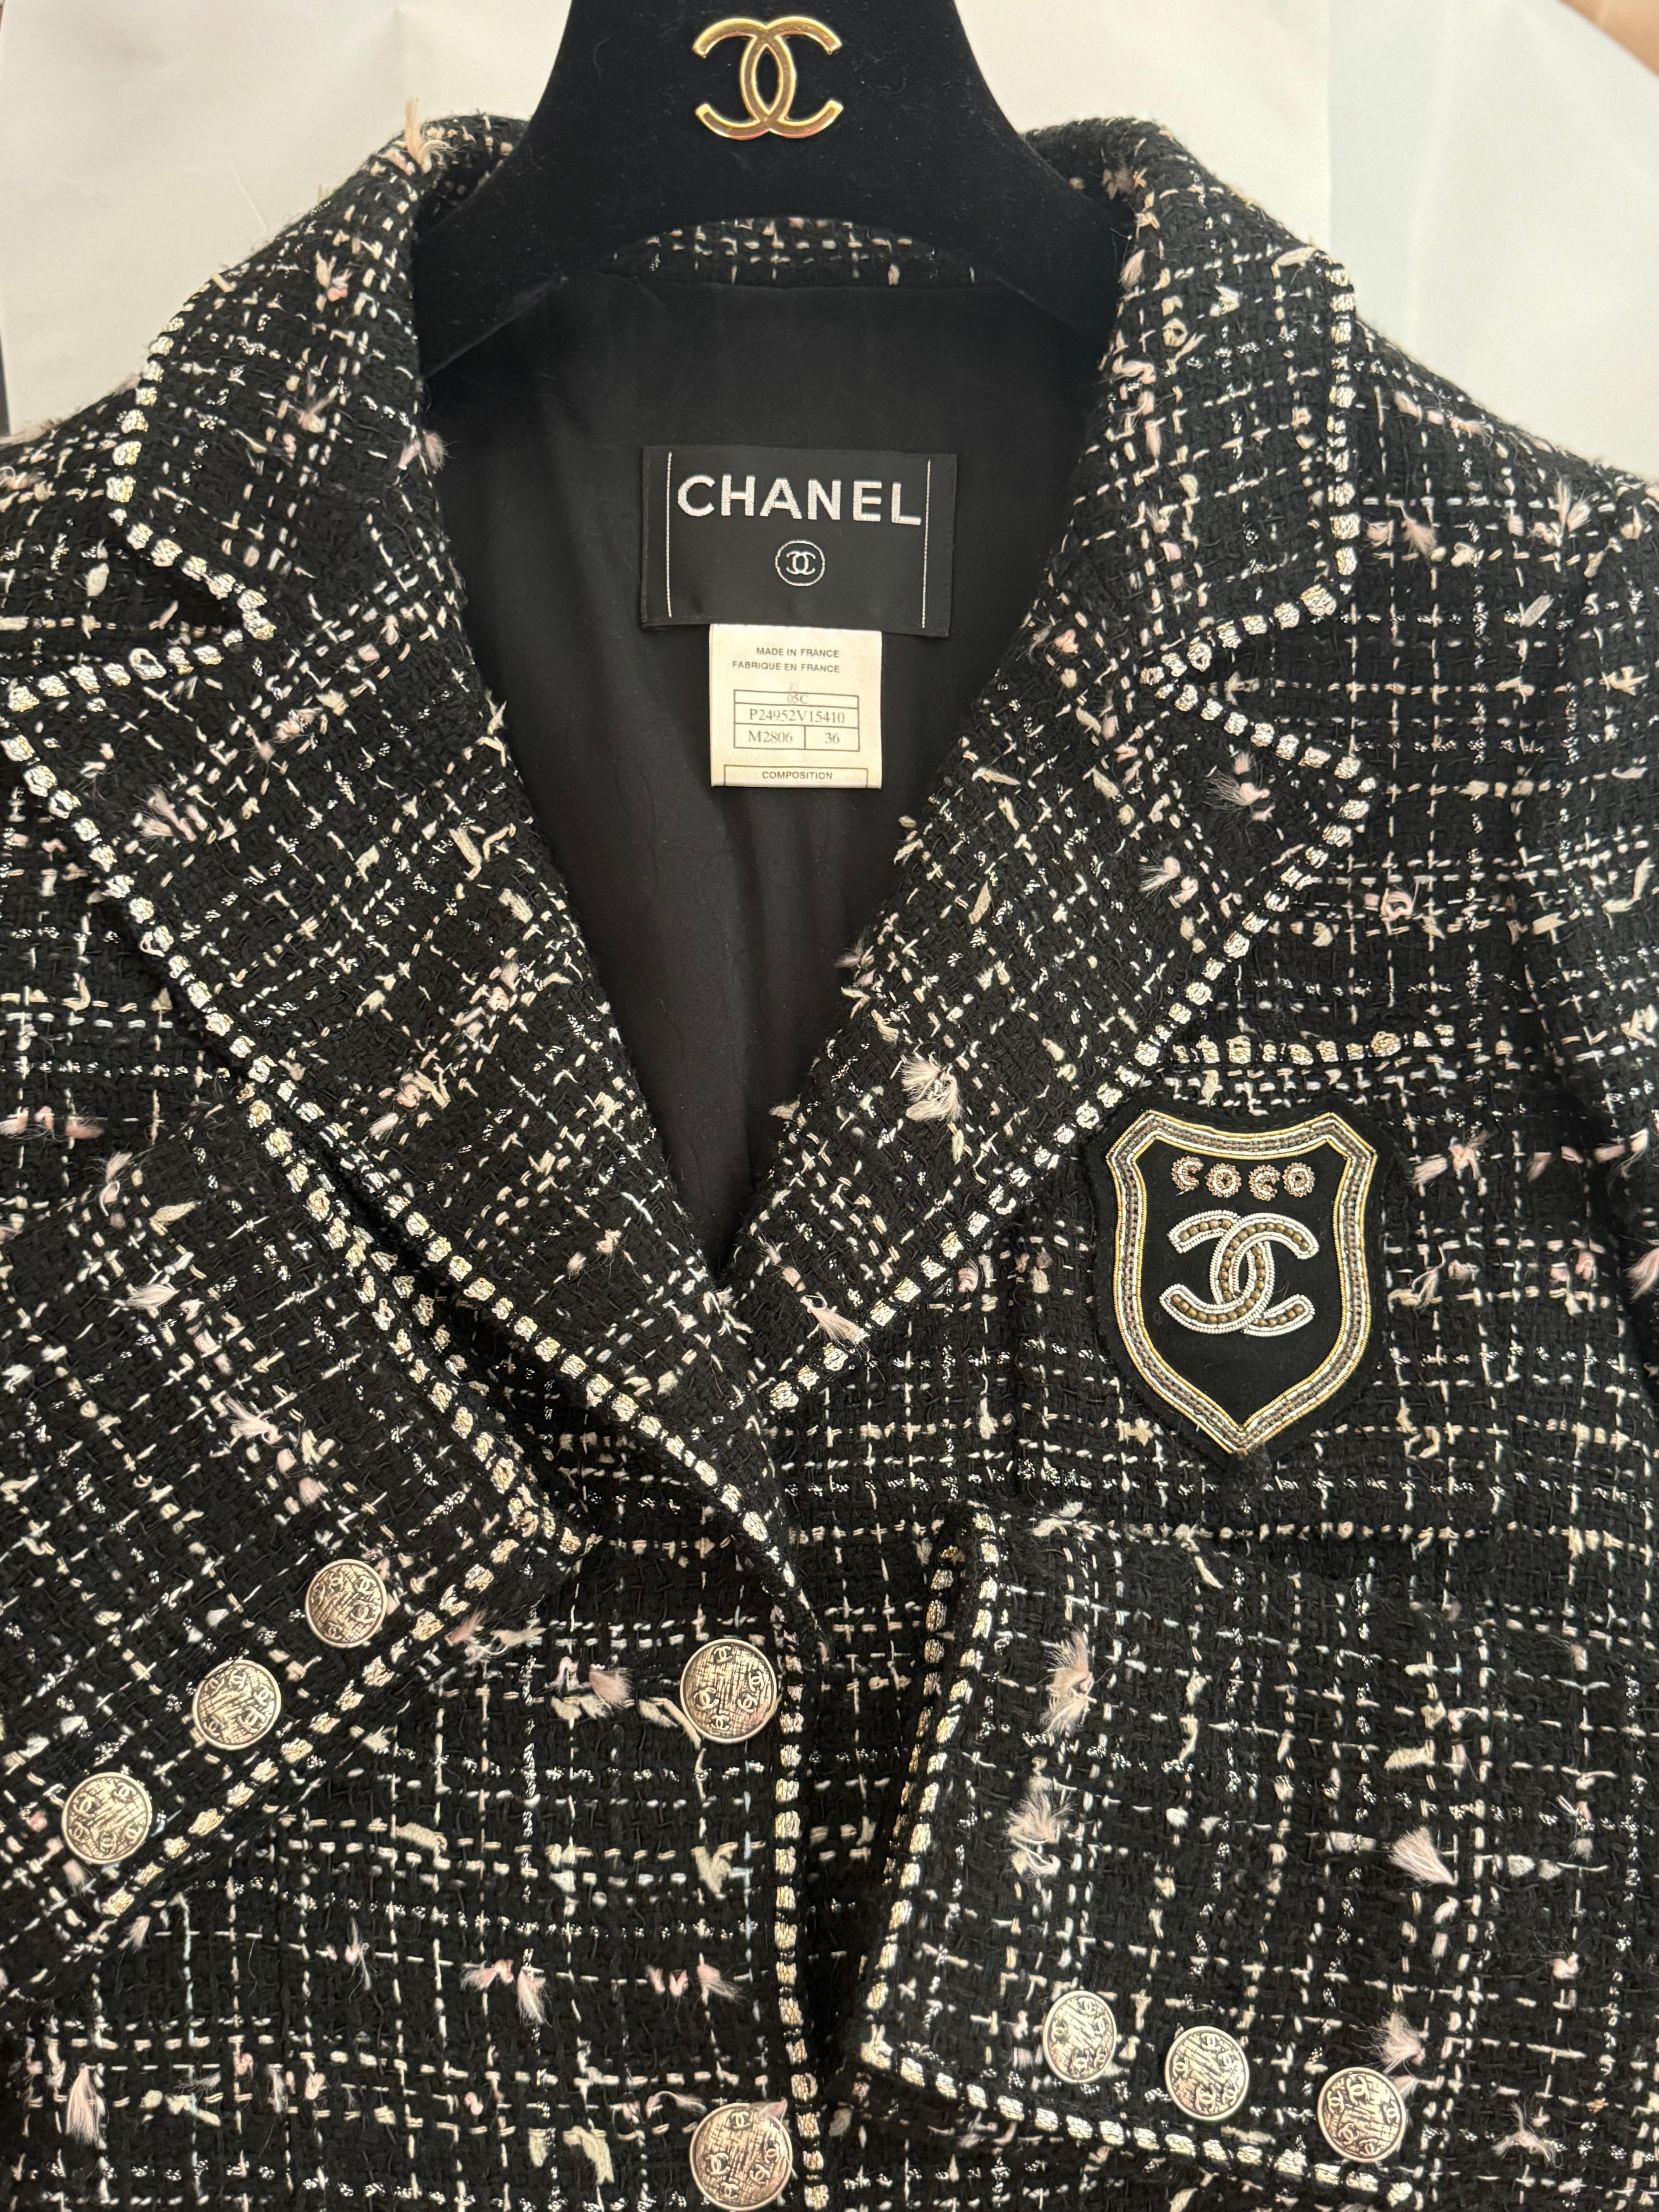 Rare Chanel Cruise 2005 veste taille 36 FR the devil wears Prada movie jacket, CC logo coco patch et tweed avec détails or et argent, cc logo buttons, fits 0,2,4 US